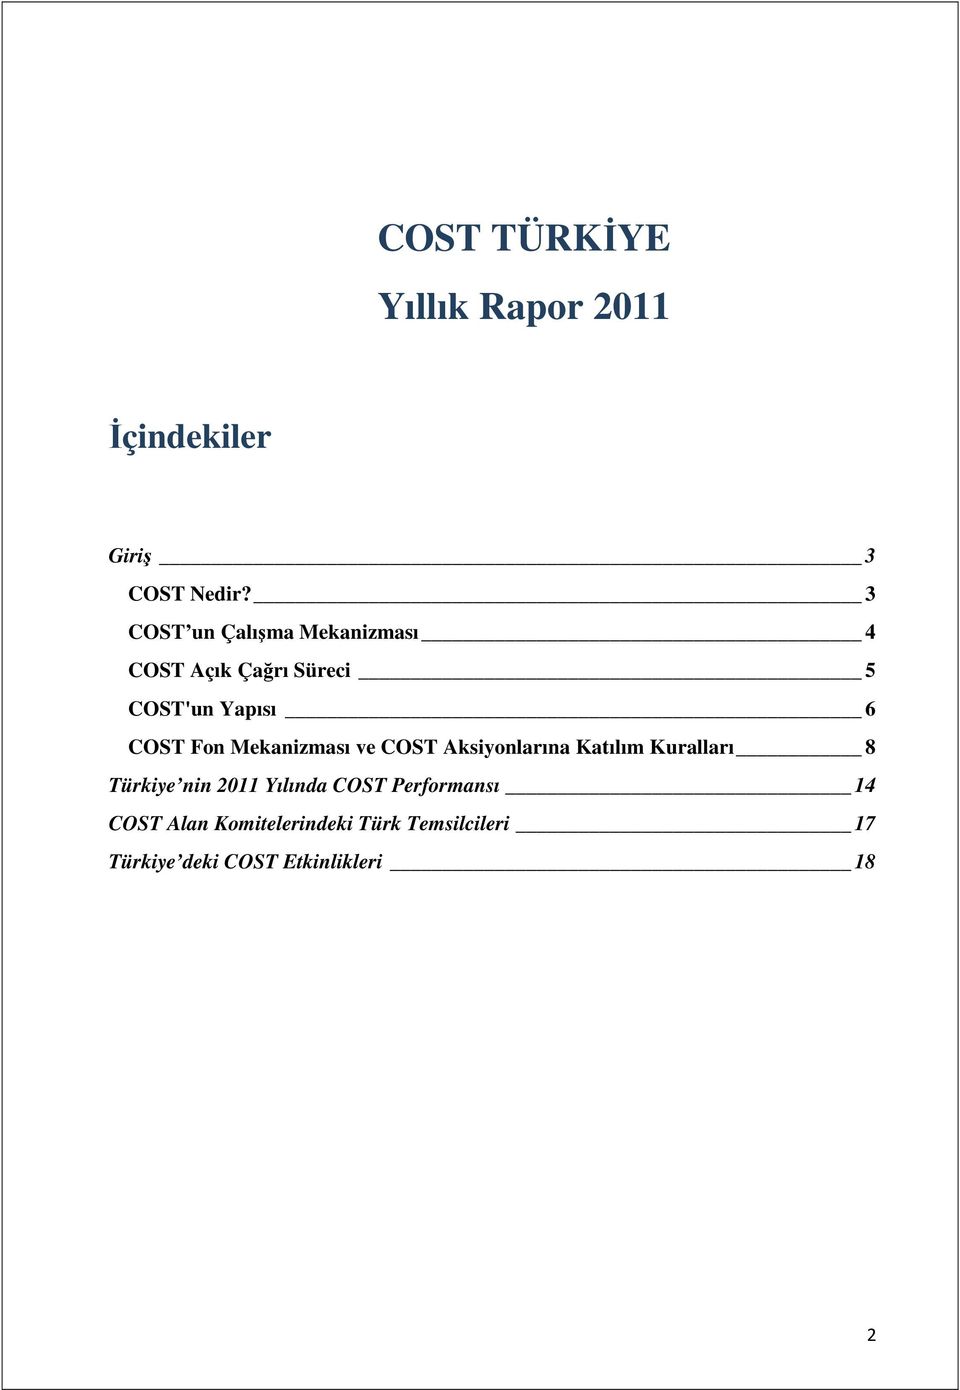 Fon Mekanizması ve COST Aksiyonlarına Katılım Kuralları 8 Türkiye nin 2011